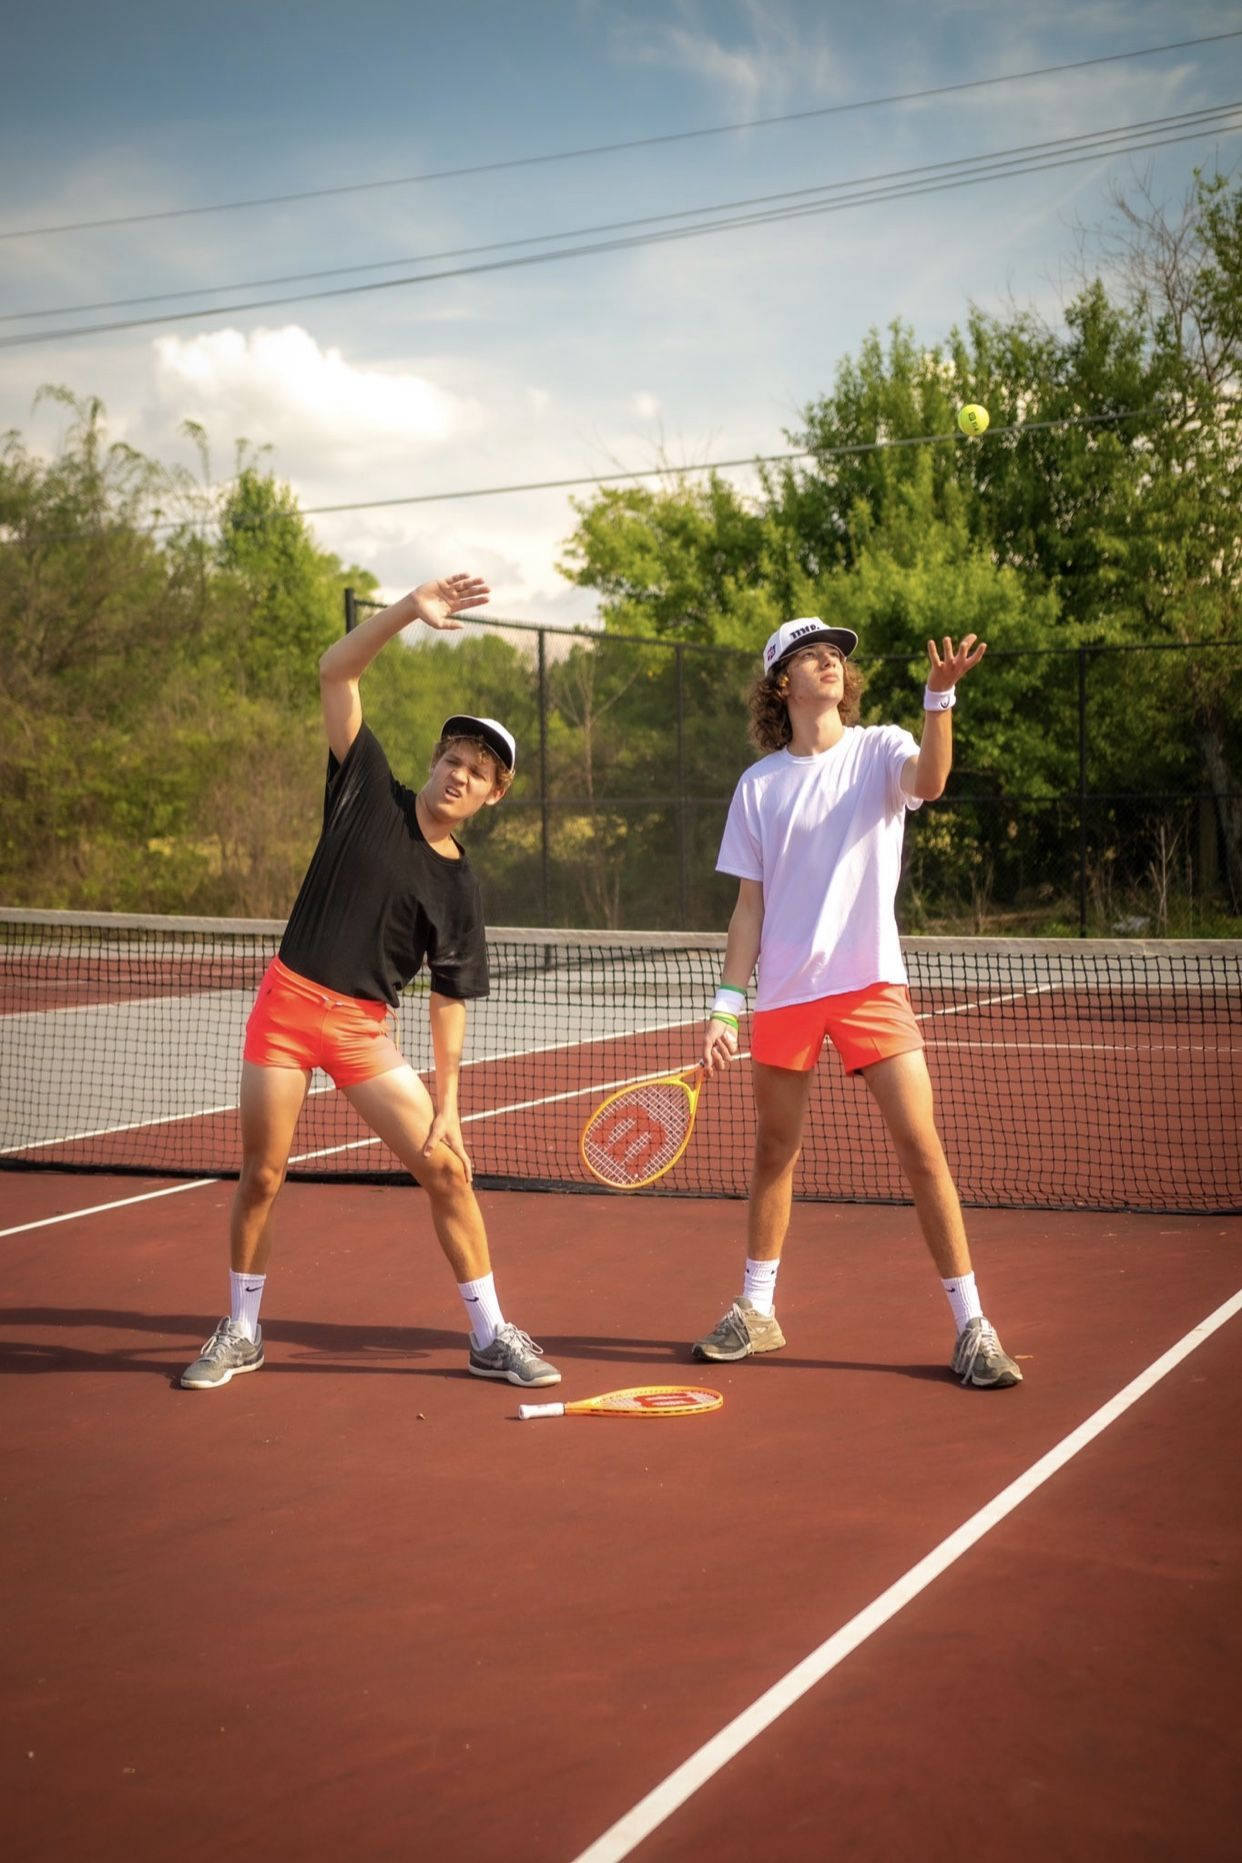 Baylenlevine Y Kyle Ataviados Para Jugar Al Tenis Fondo de pantalla